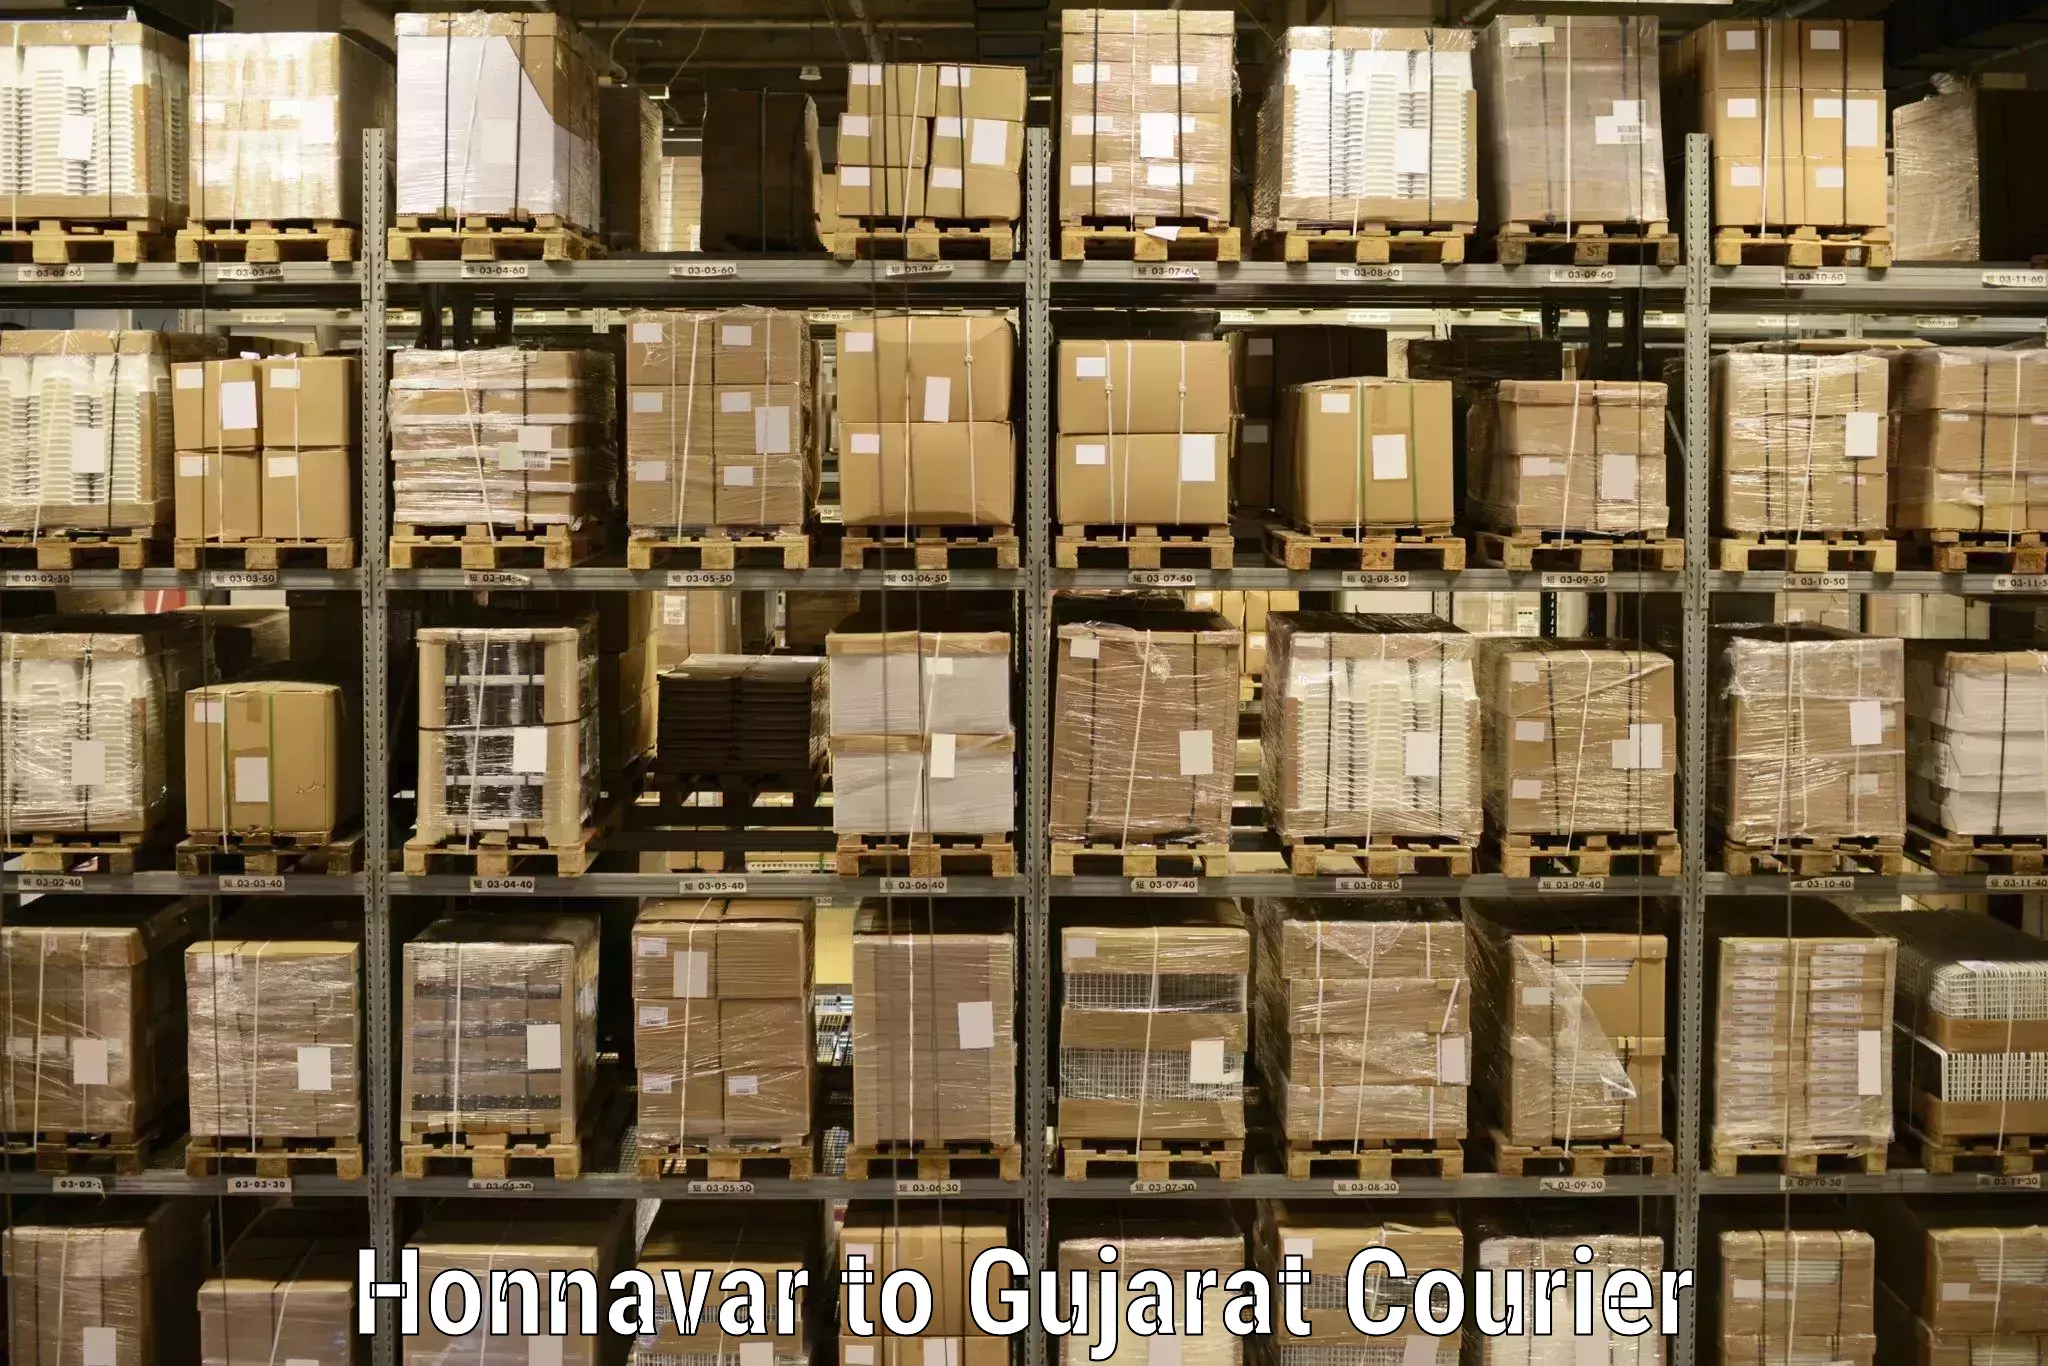 User-friendly delivery service Honnavar to Savar Kundla